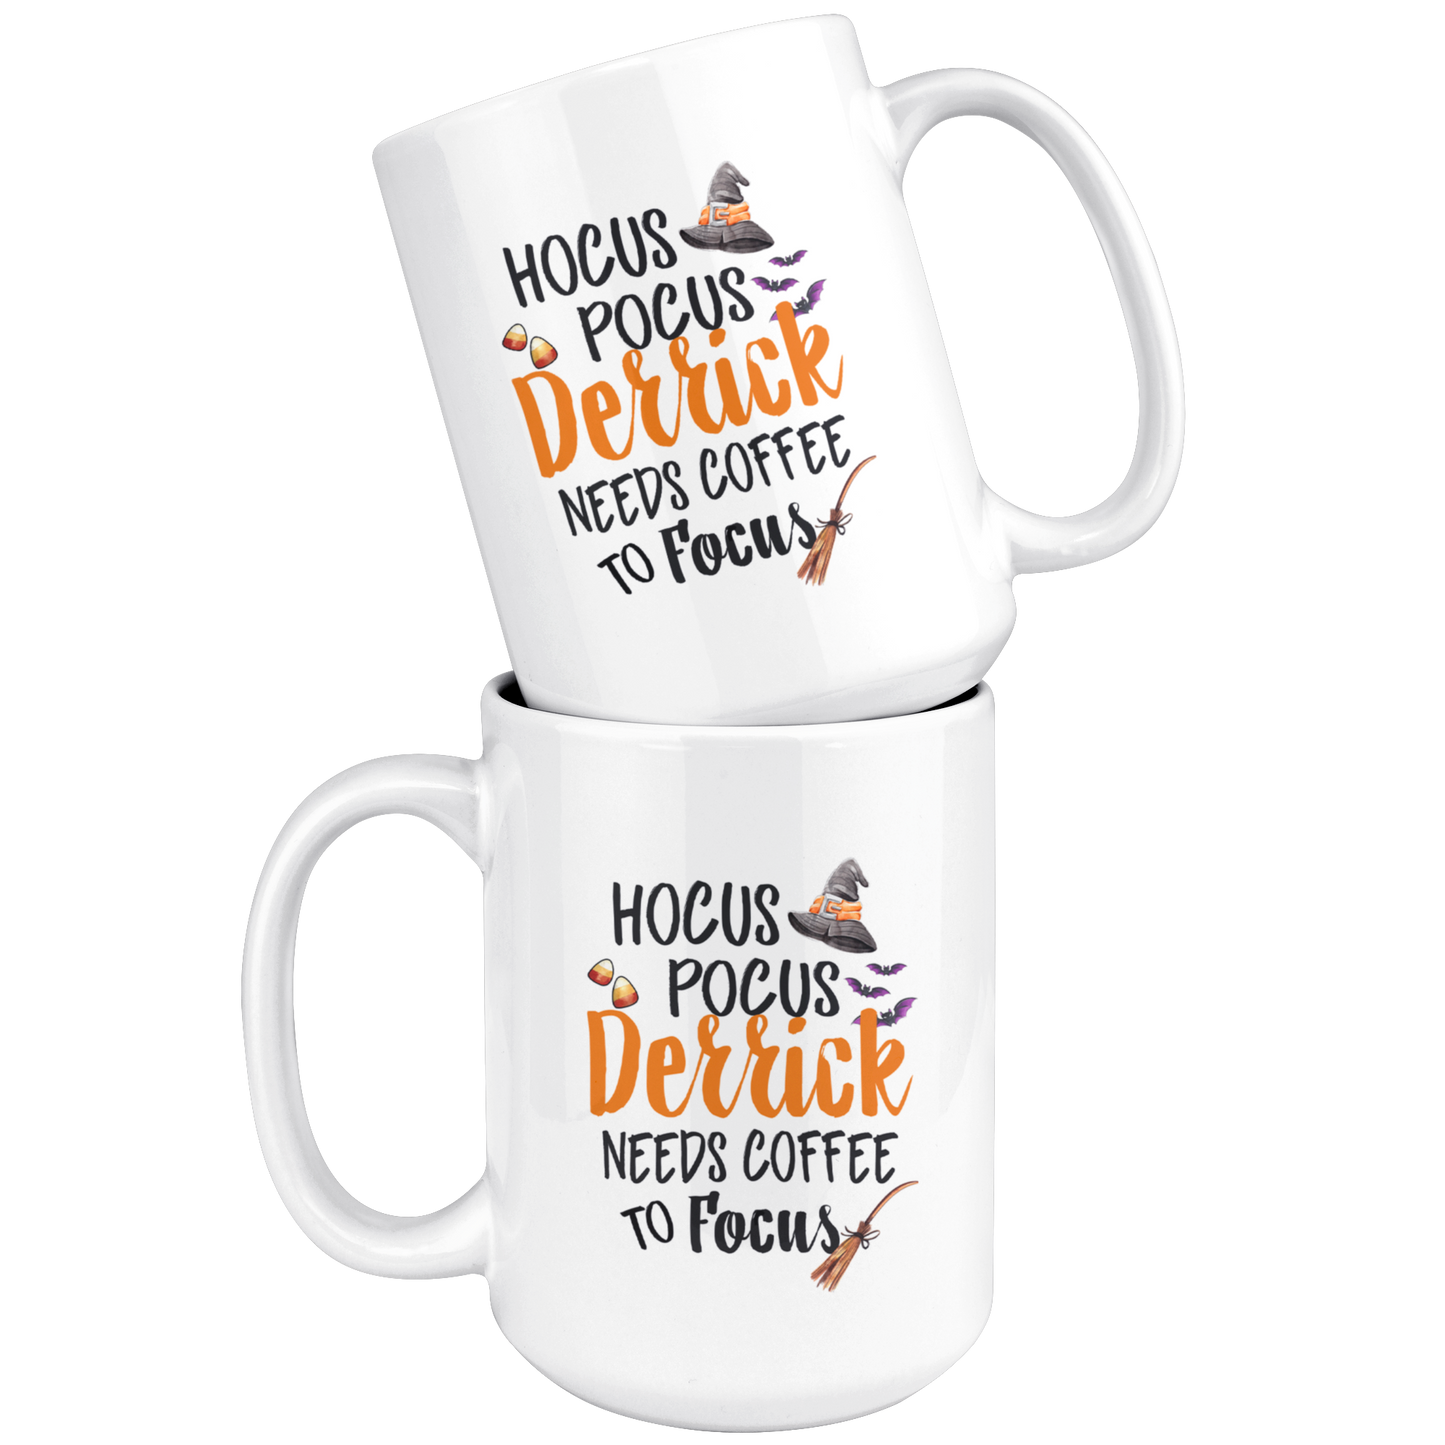 ND-20837795-sp-17138 - 15oz. Ceramic Mug - Hocus Pocus Derrick Needs Coffee To Focu